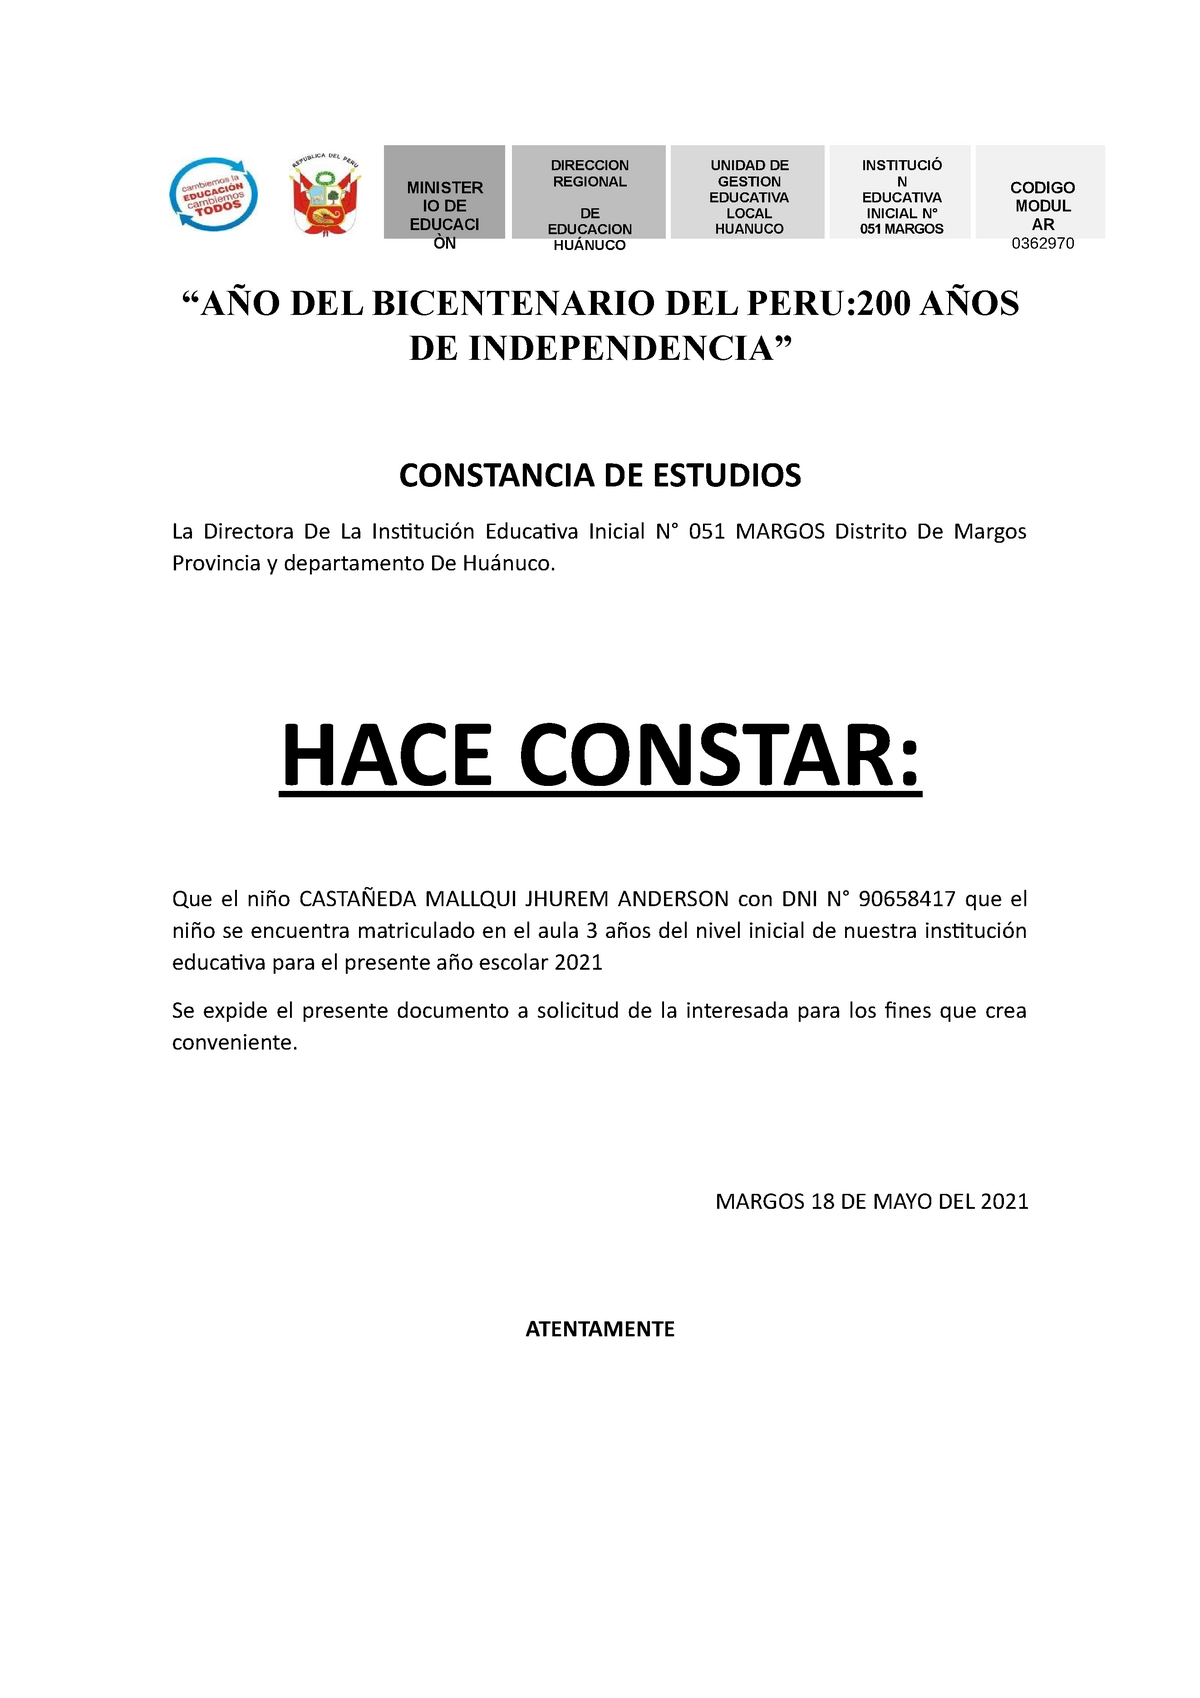 Constancia de estudios 2021 - “AÑO DEL BICENTENARIO DEL PERU:200 AÑOS DE  INDEPENDENCIA” CONSTANCIA - Studocu